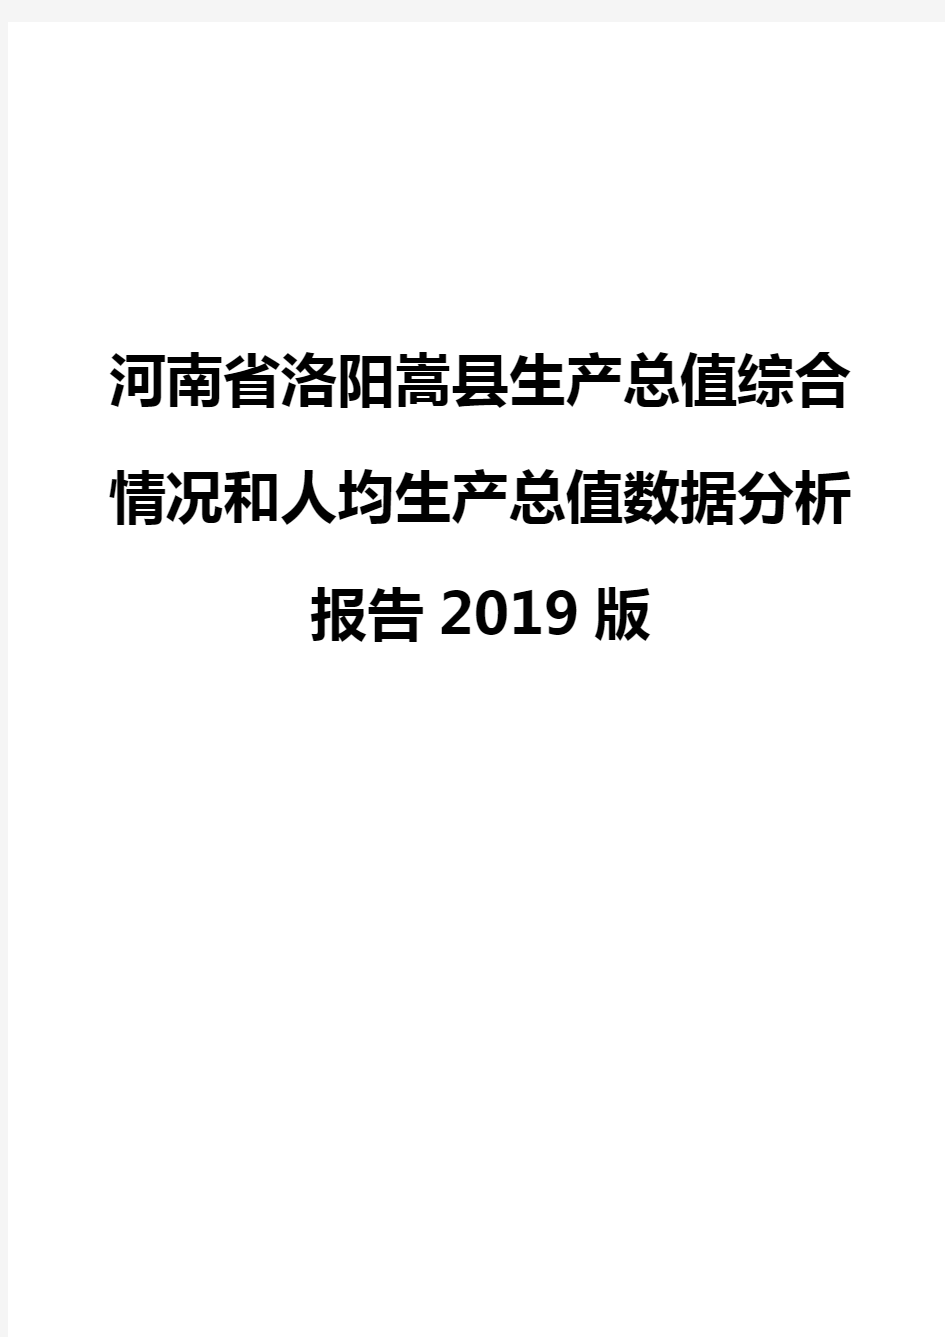 河南省洛阳嵩县生产总值综合情况和人均生产总值数据分析报告2019版